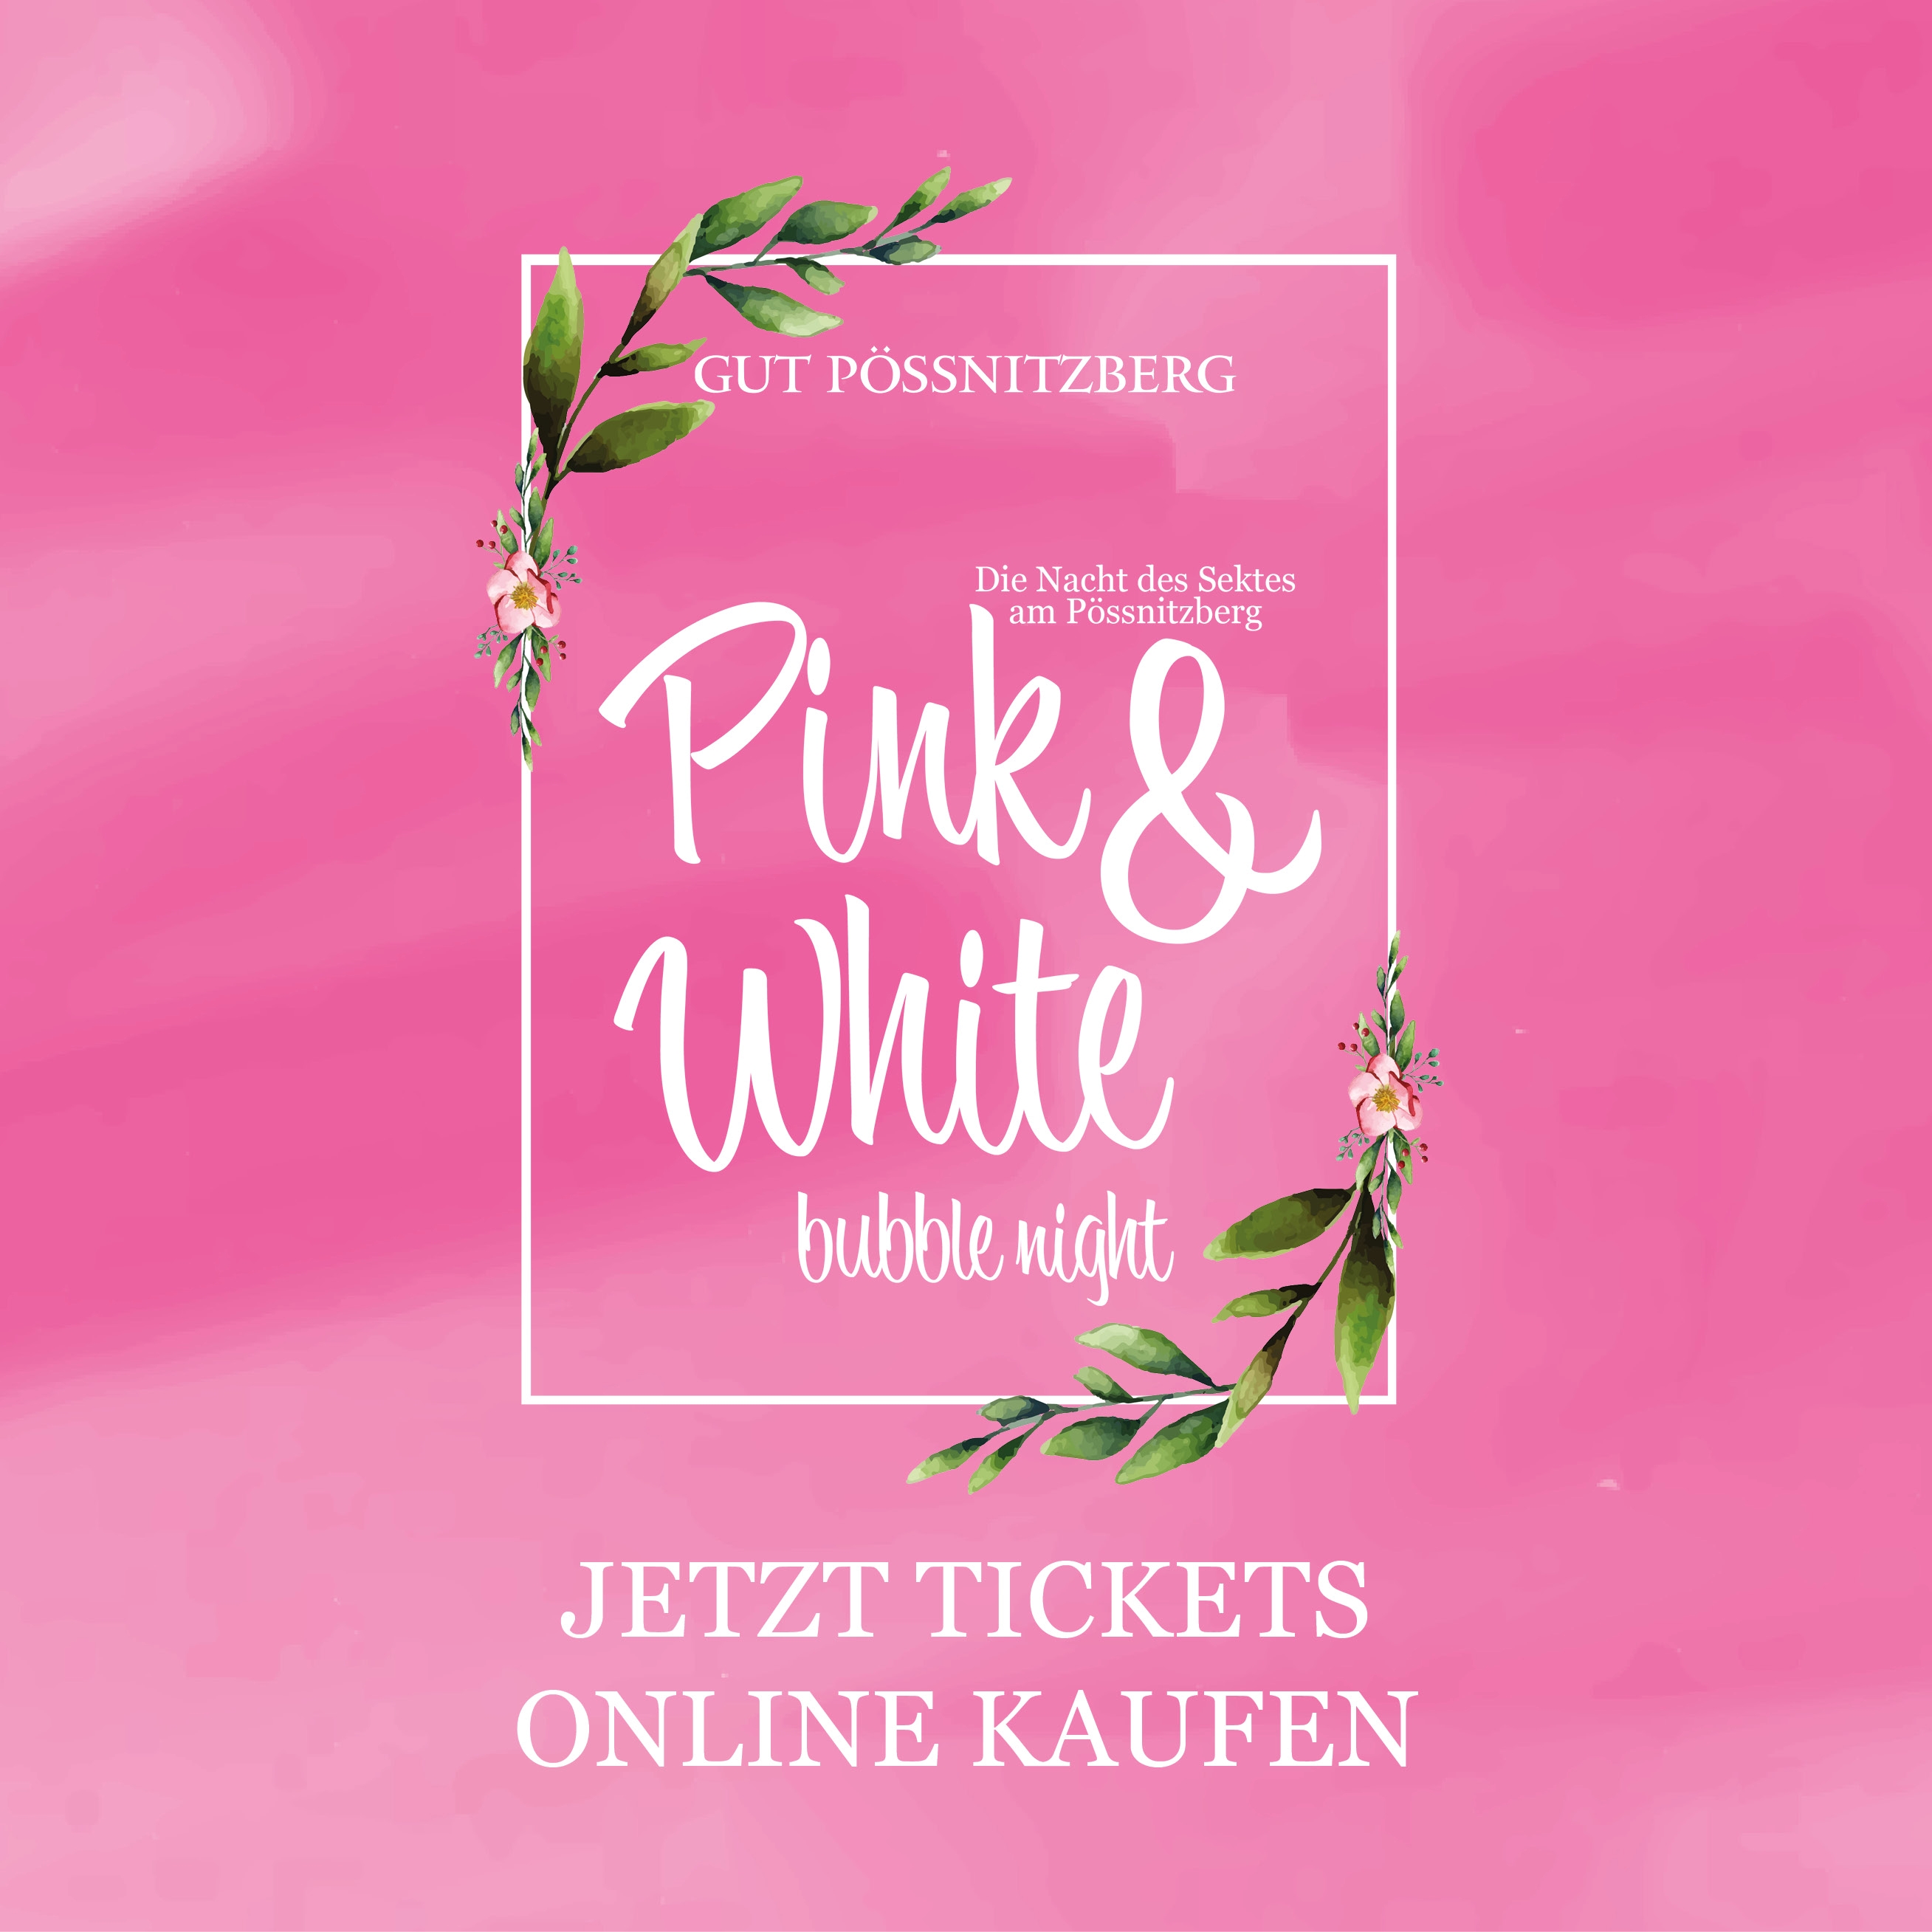 Pink White Event Karten Eintrittskarten online kaufen Logo